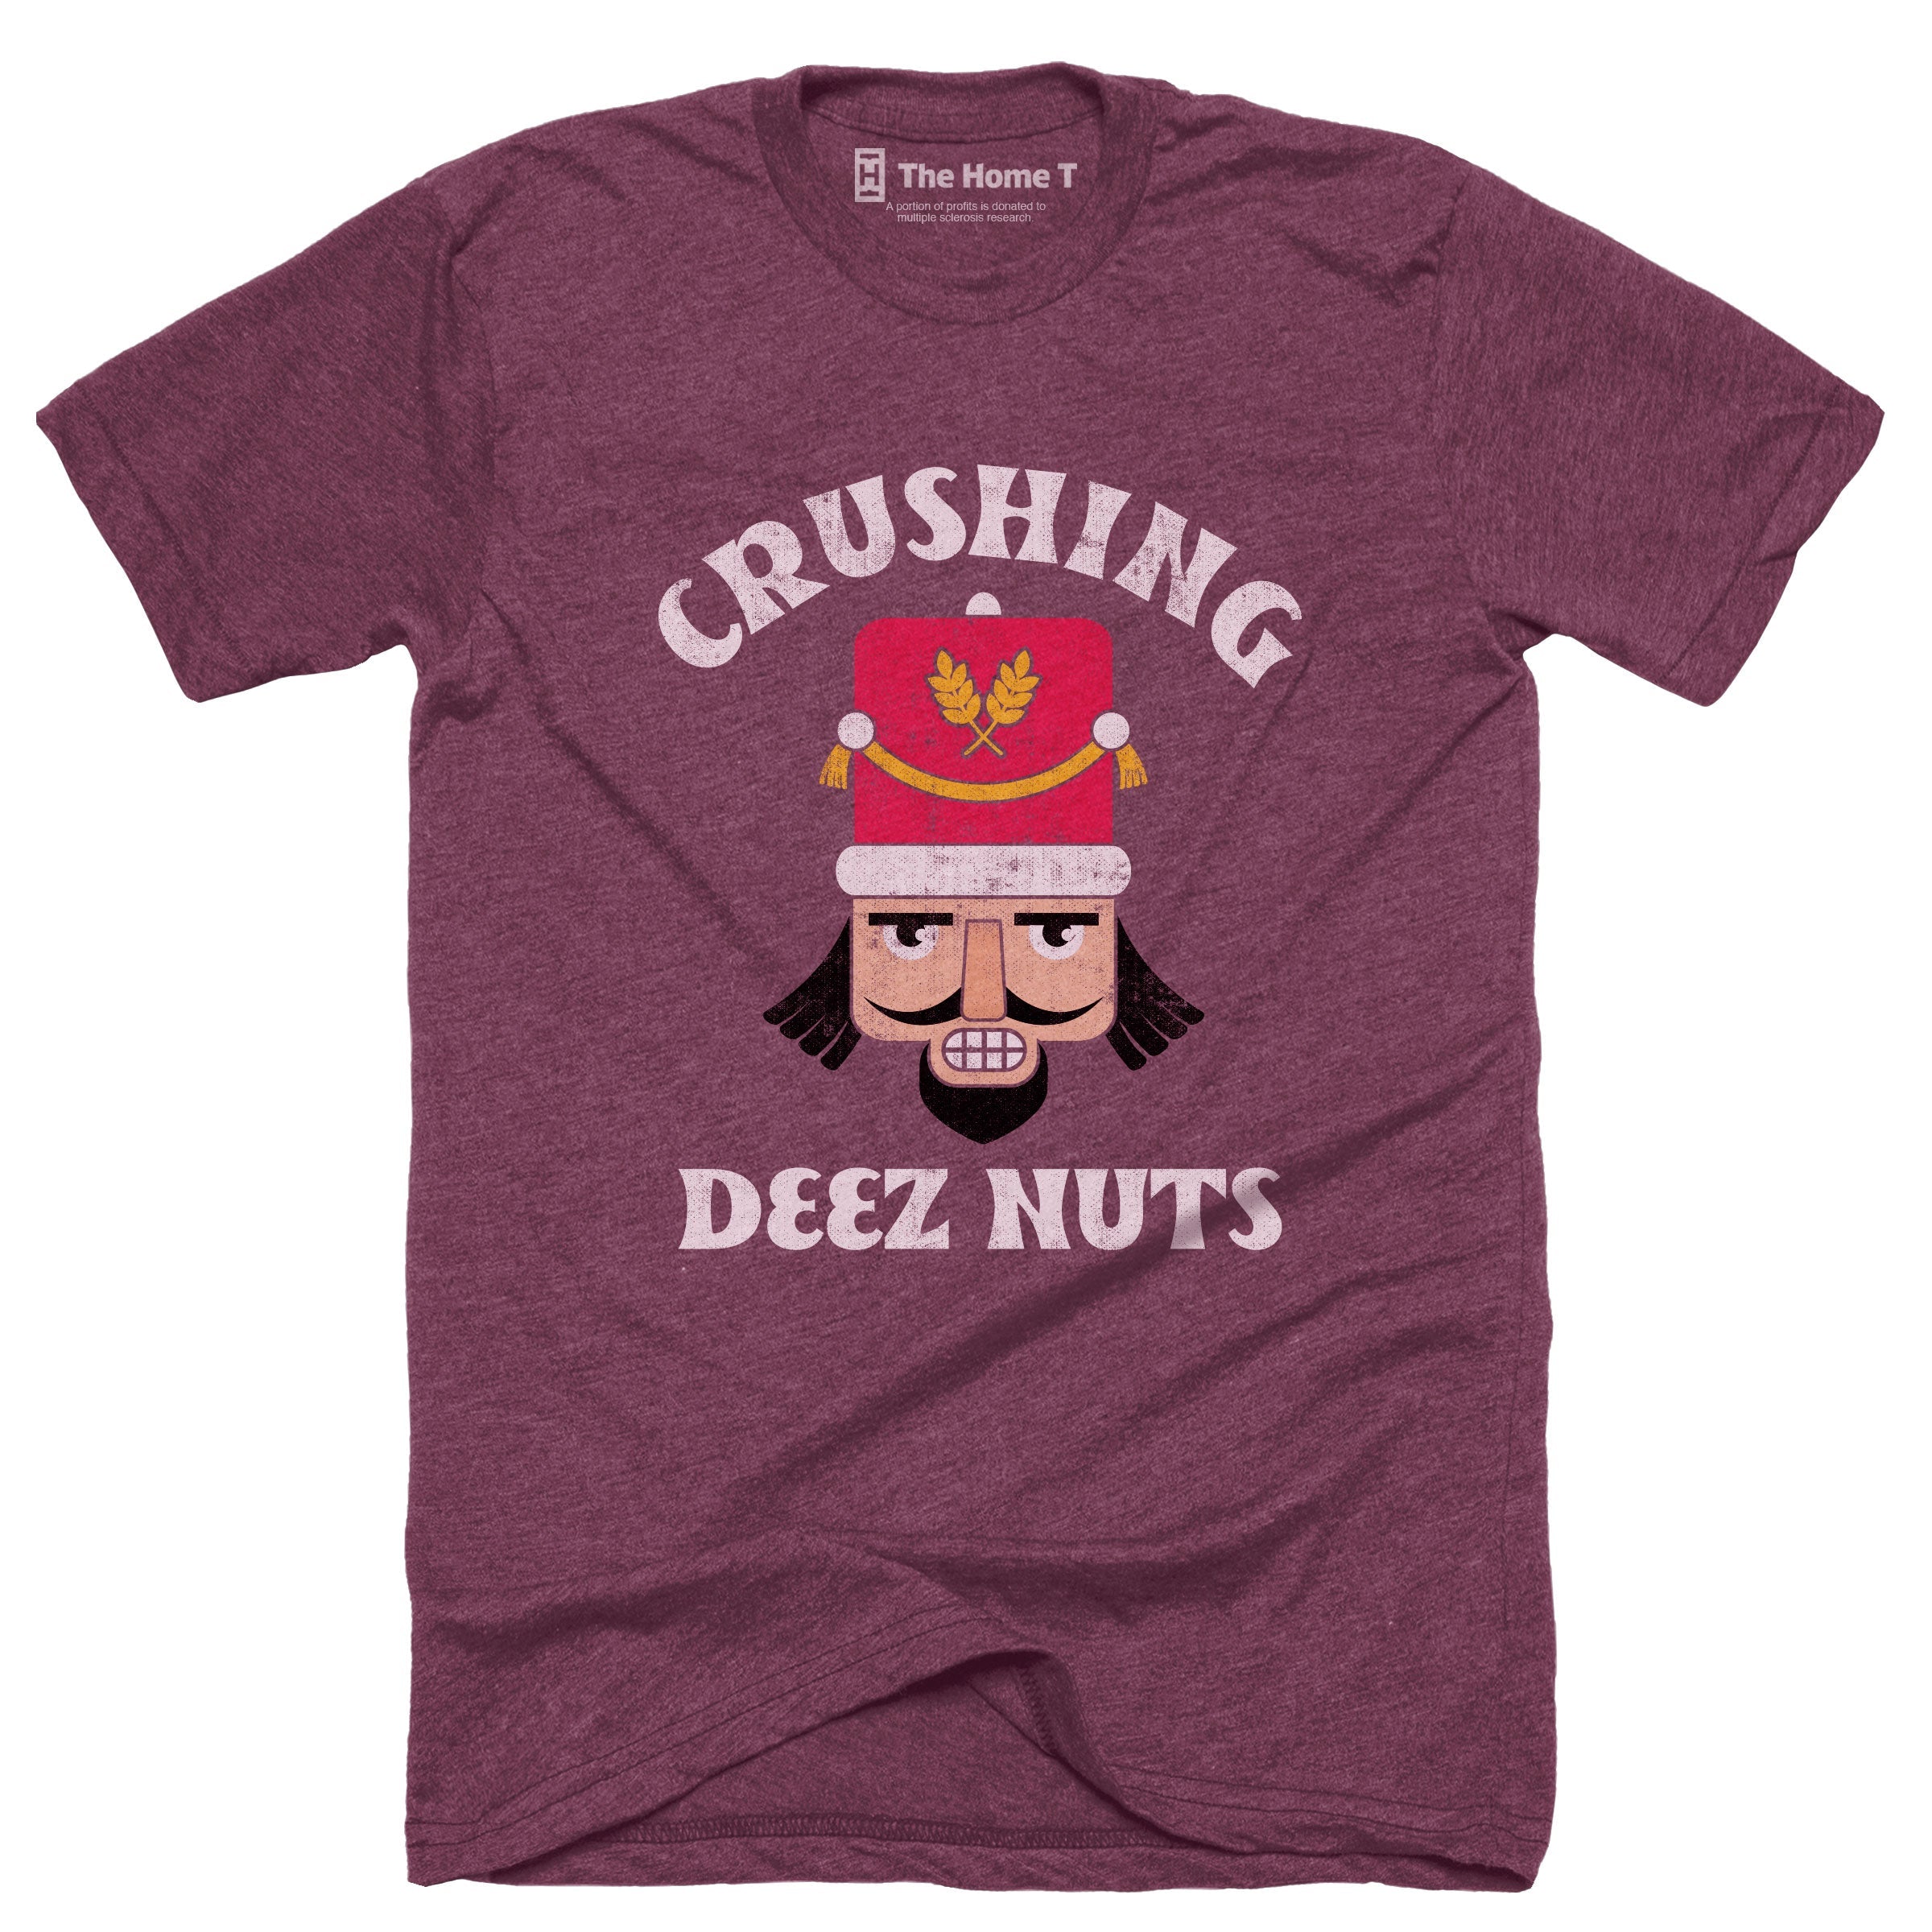 Crushing Deez Nuts